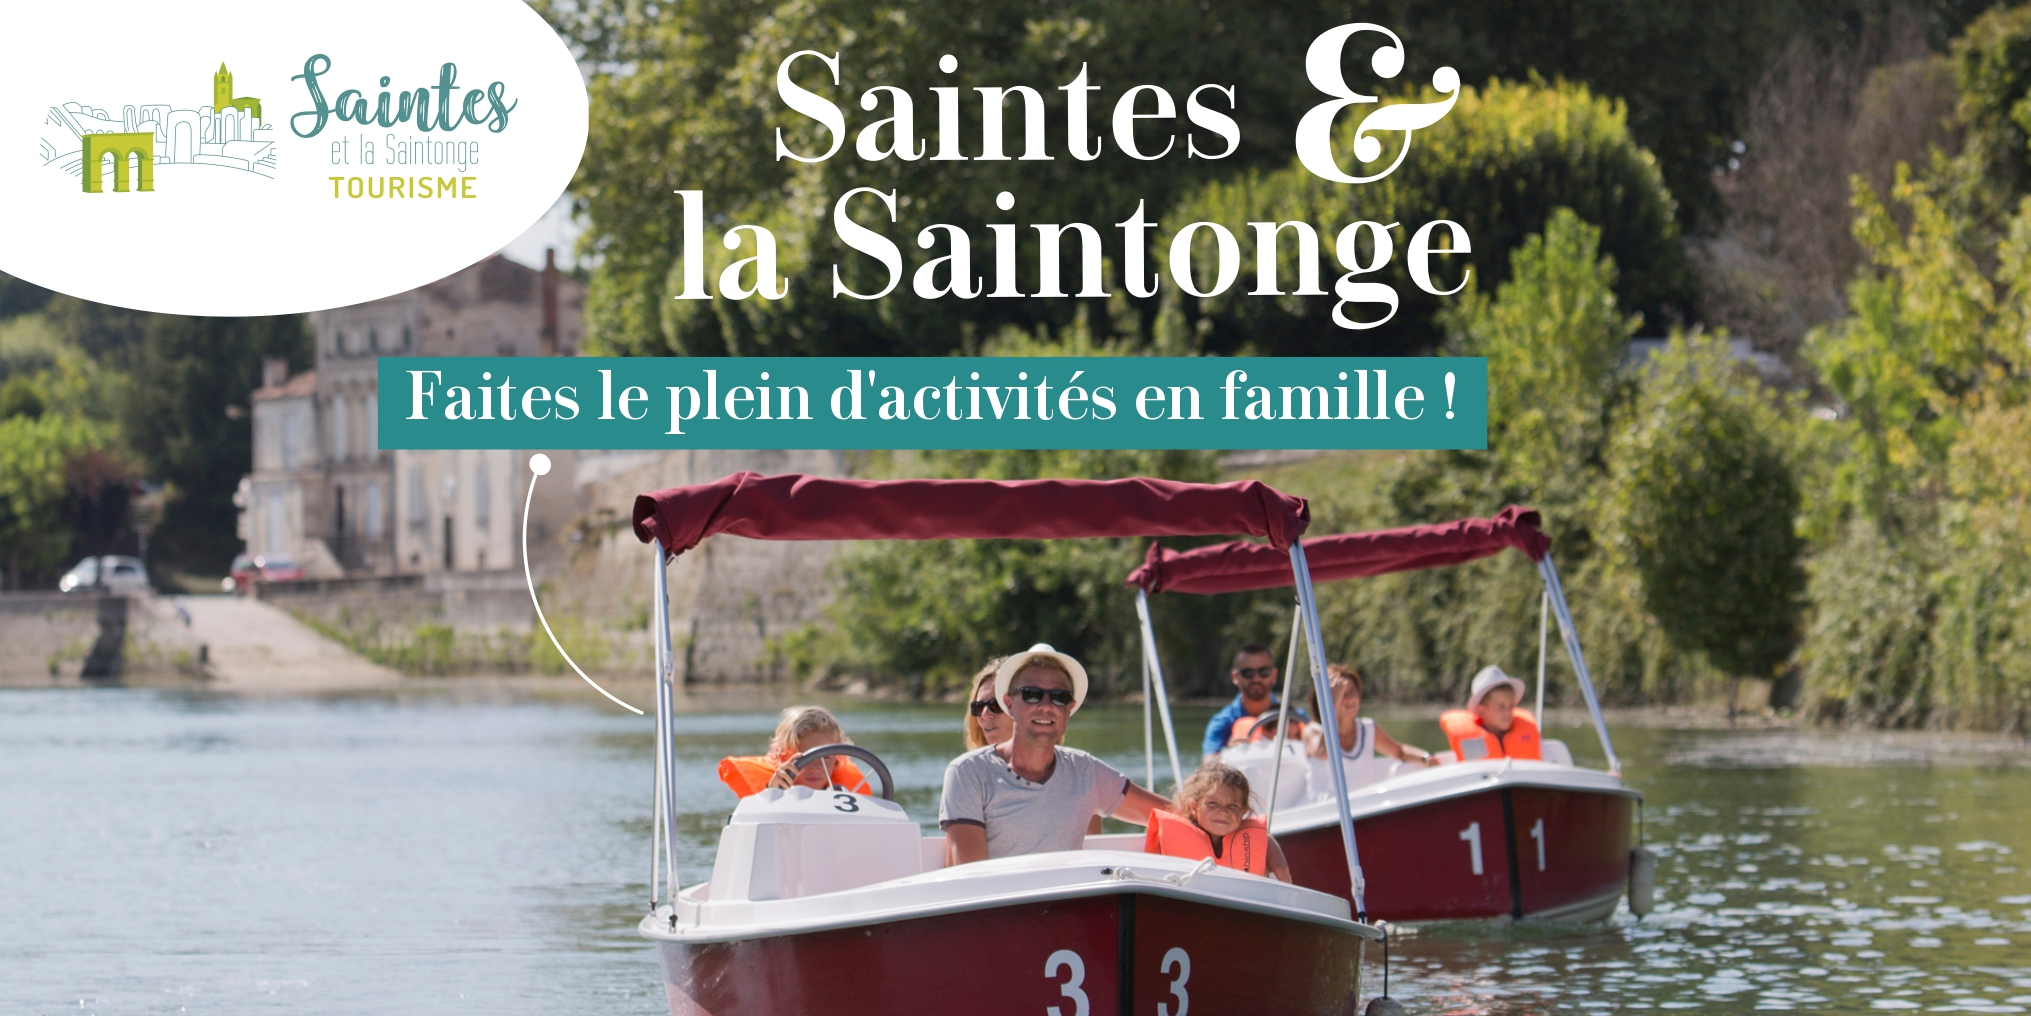 Saintes et la Saintonge : de belles surprises à vivre en famille !